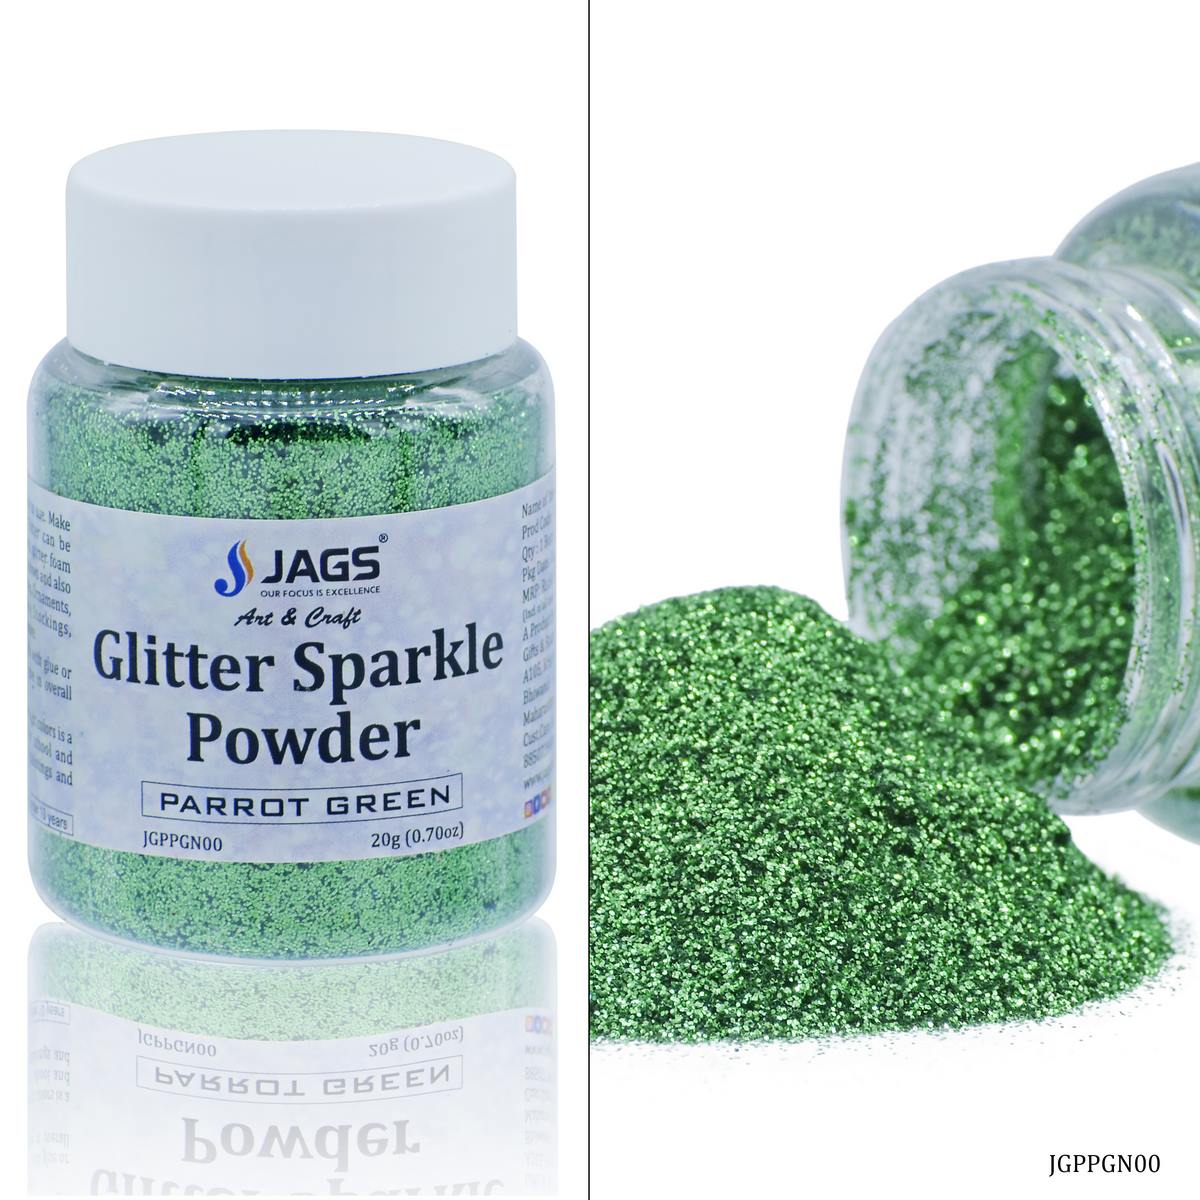 jags-mumbai Glitter Powder Jags Glitter Powder Parrot Green 20gm JGPPGN00